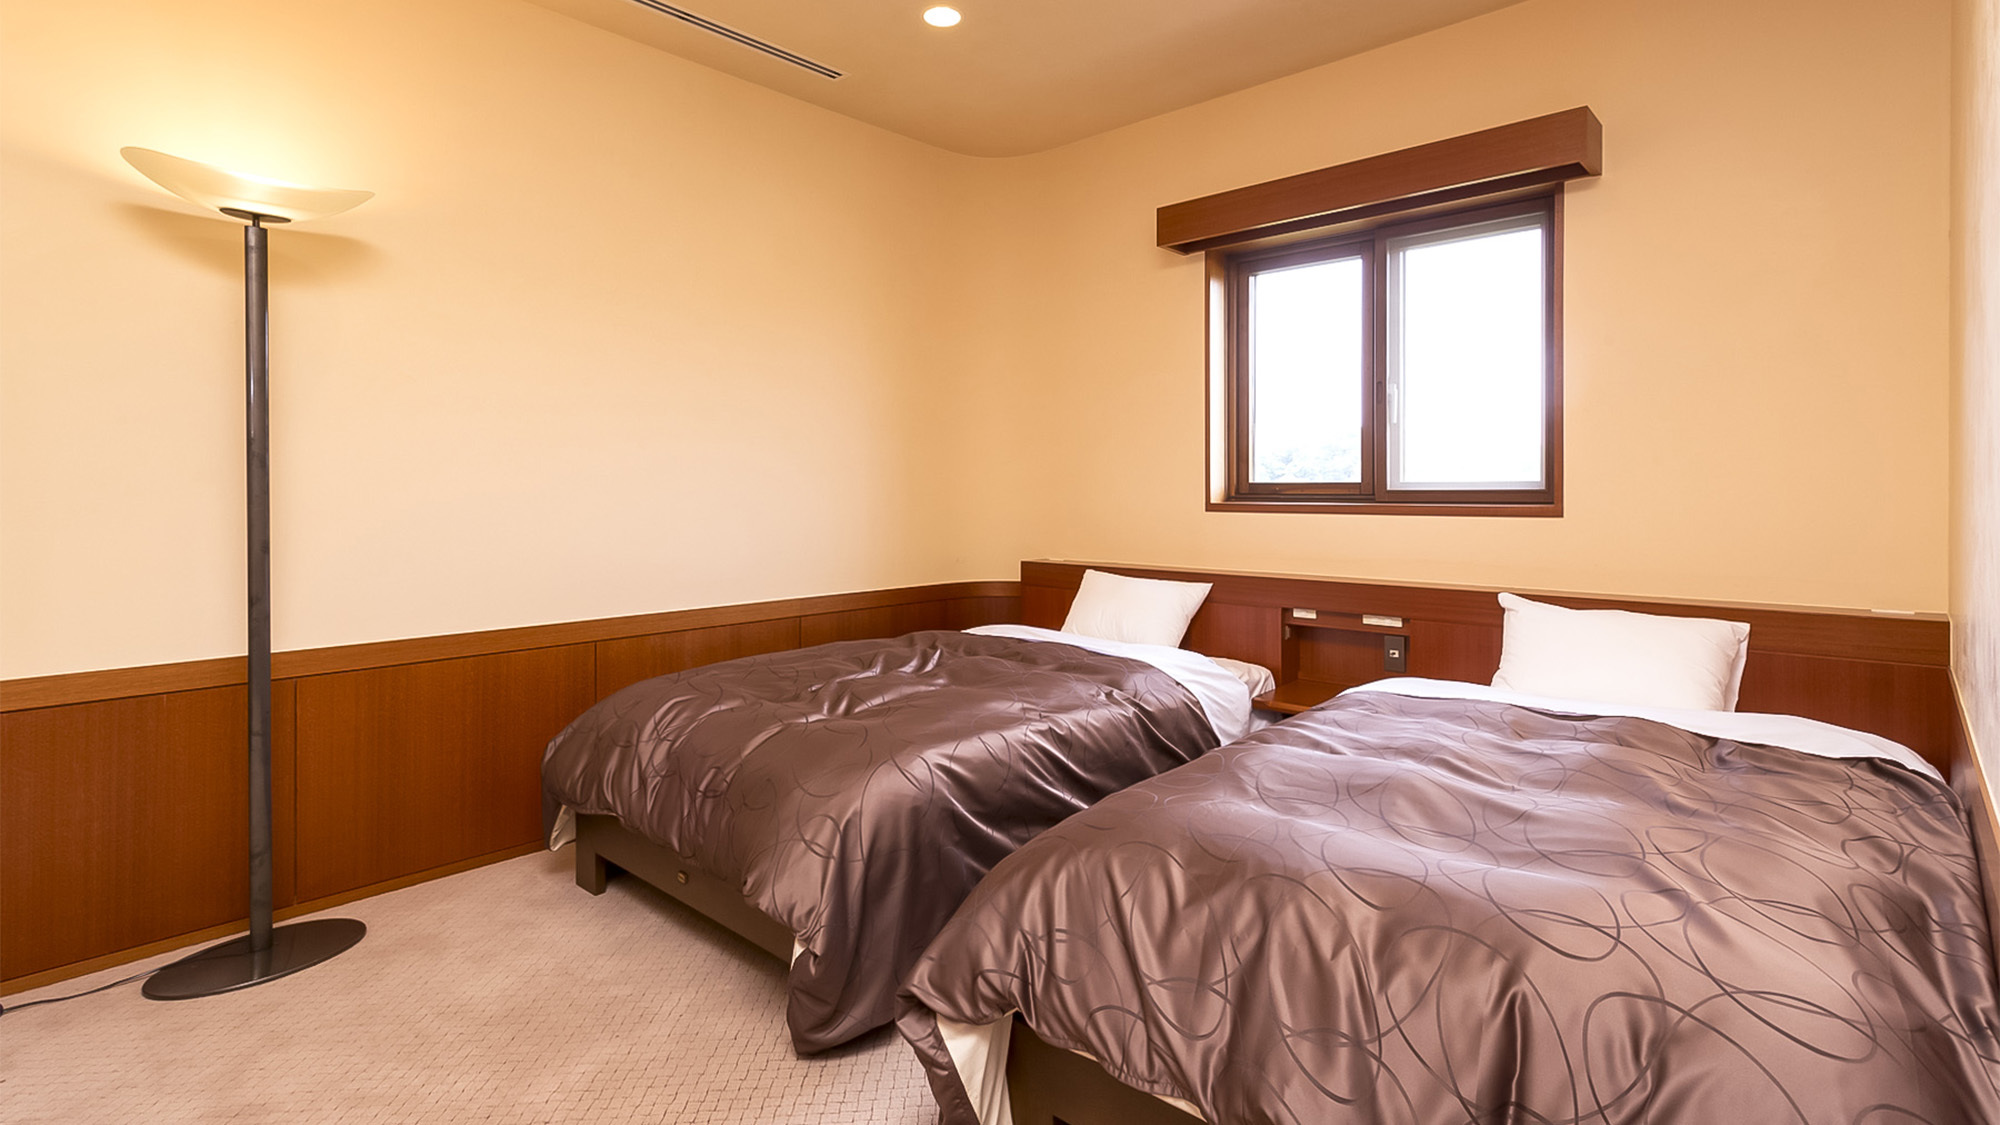 ・貴賓室VIPルームセミダブルサイズベッドを２台配した寝室